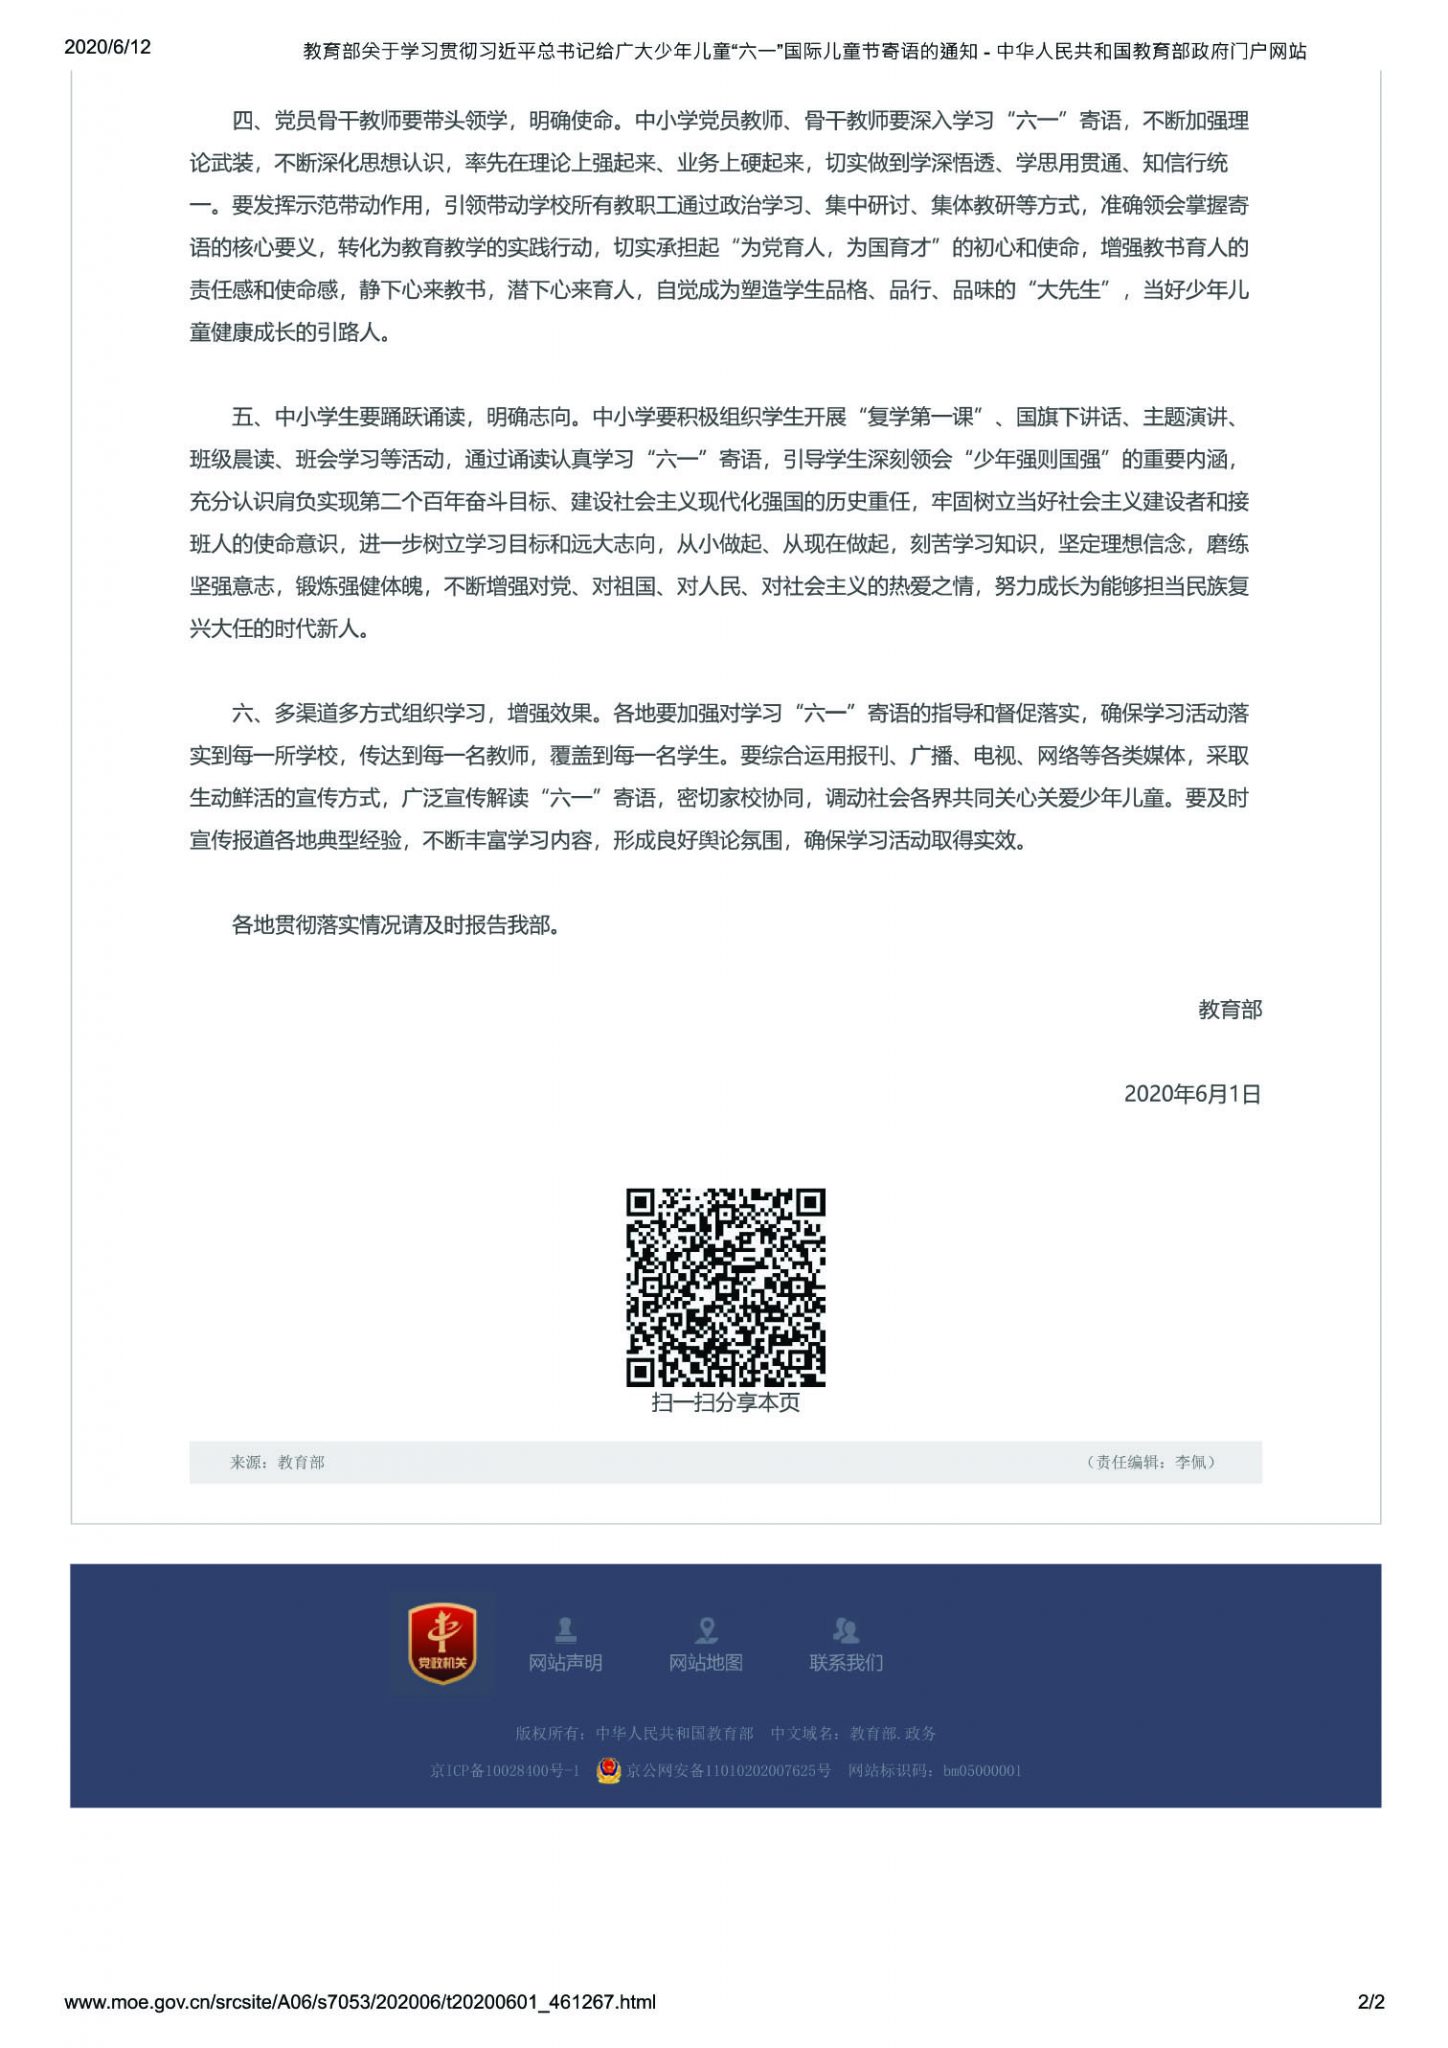 El Aviso sobre el estudio y la implementación del mensaje dado por el presidente Xi Jinping